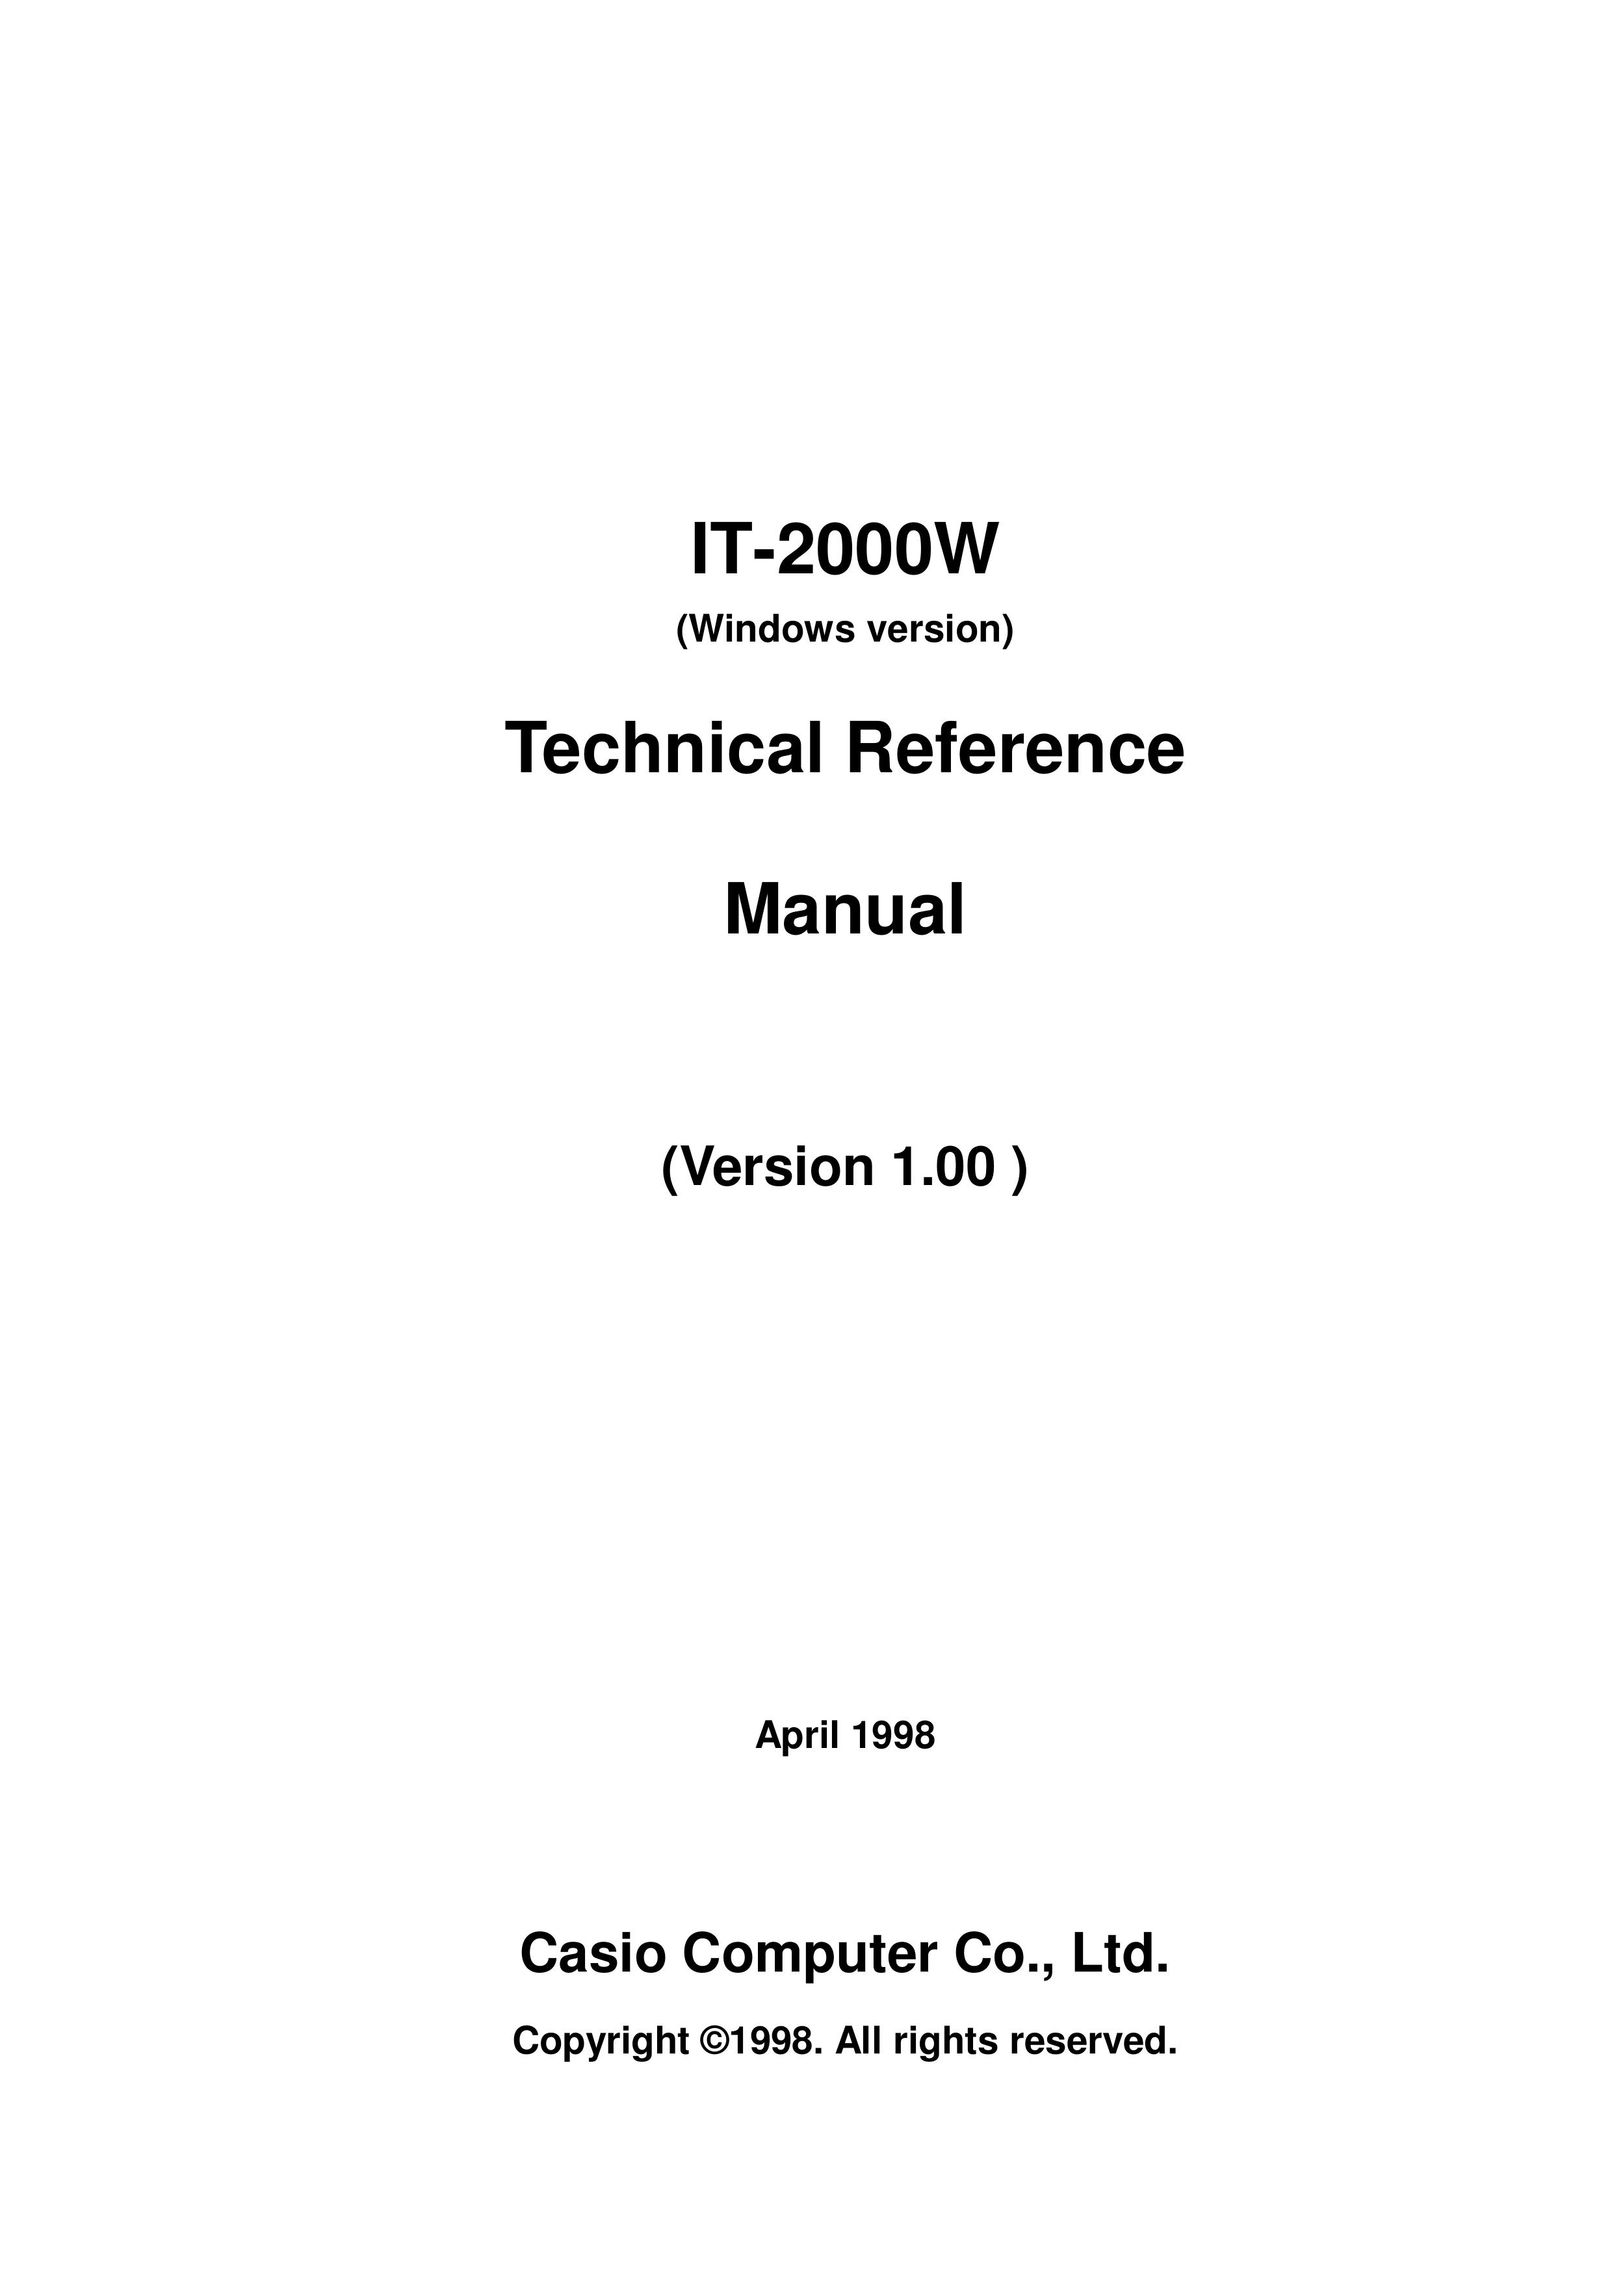 Casio IT-2000W PDAs & Smartphones User Manual